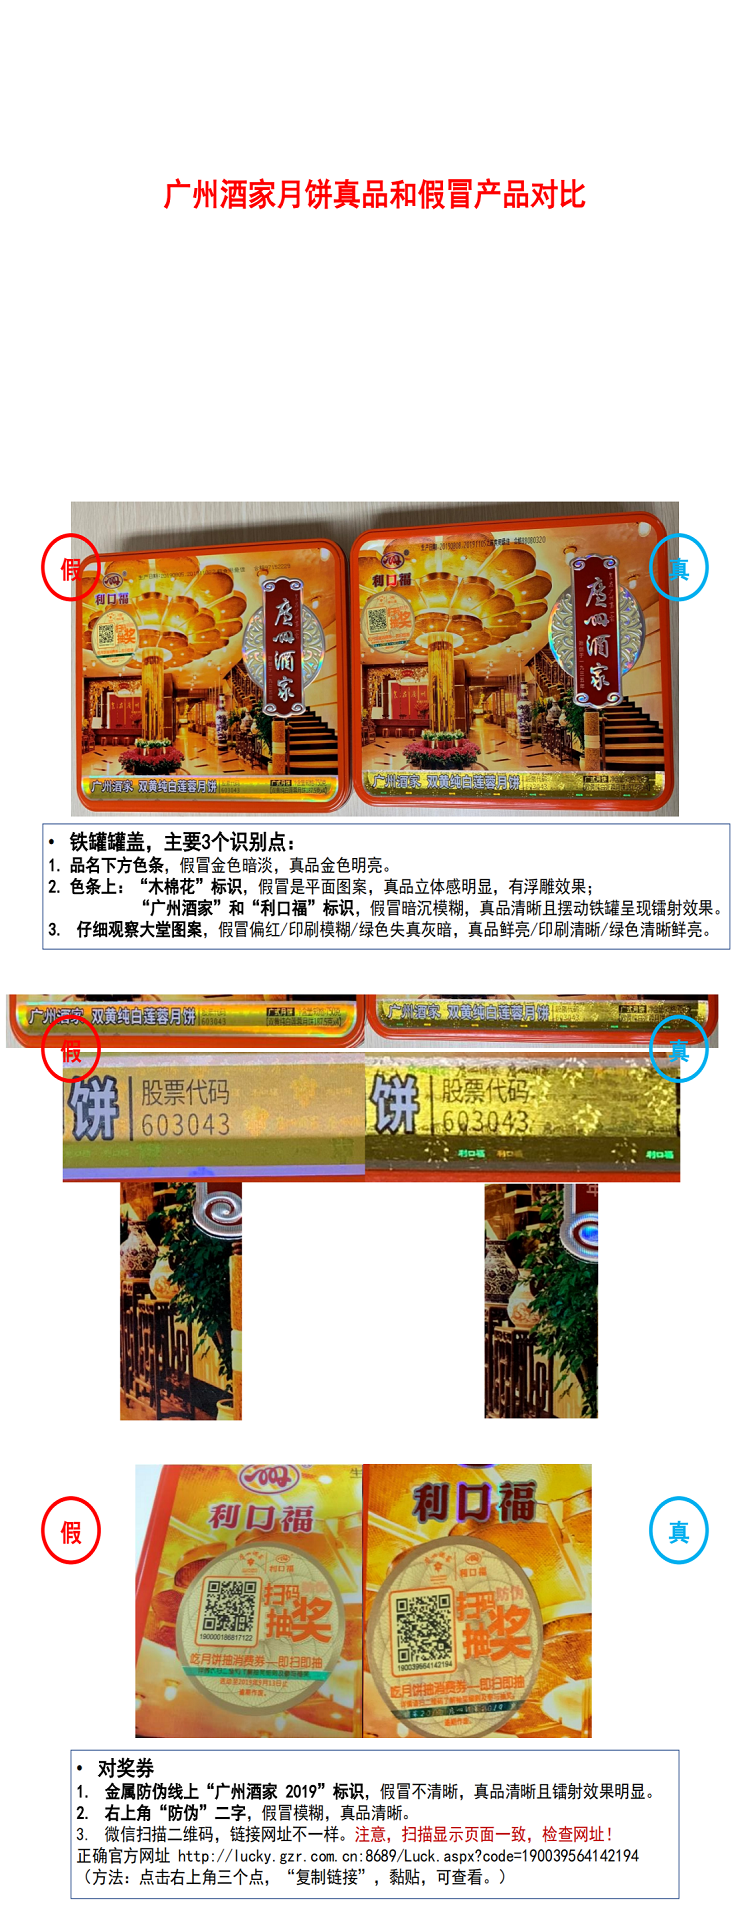 广州酒家真品和假冒月饼对比 - 190818_0.png